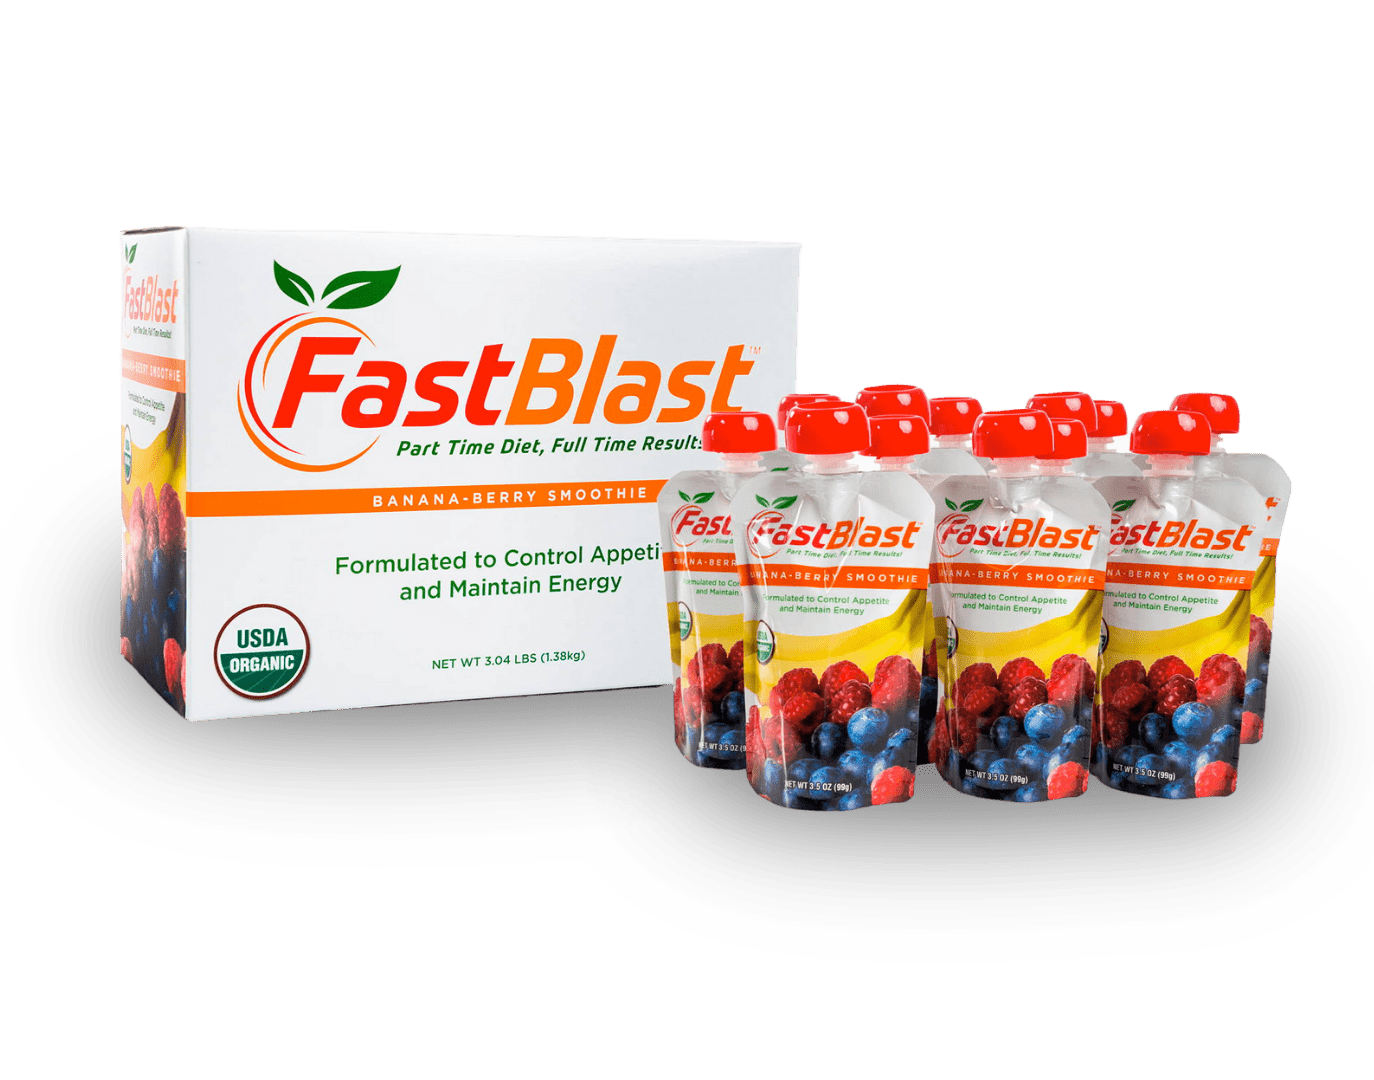 Fastblast smoothie one week trial